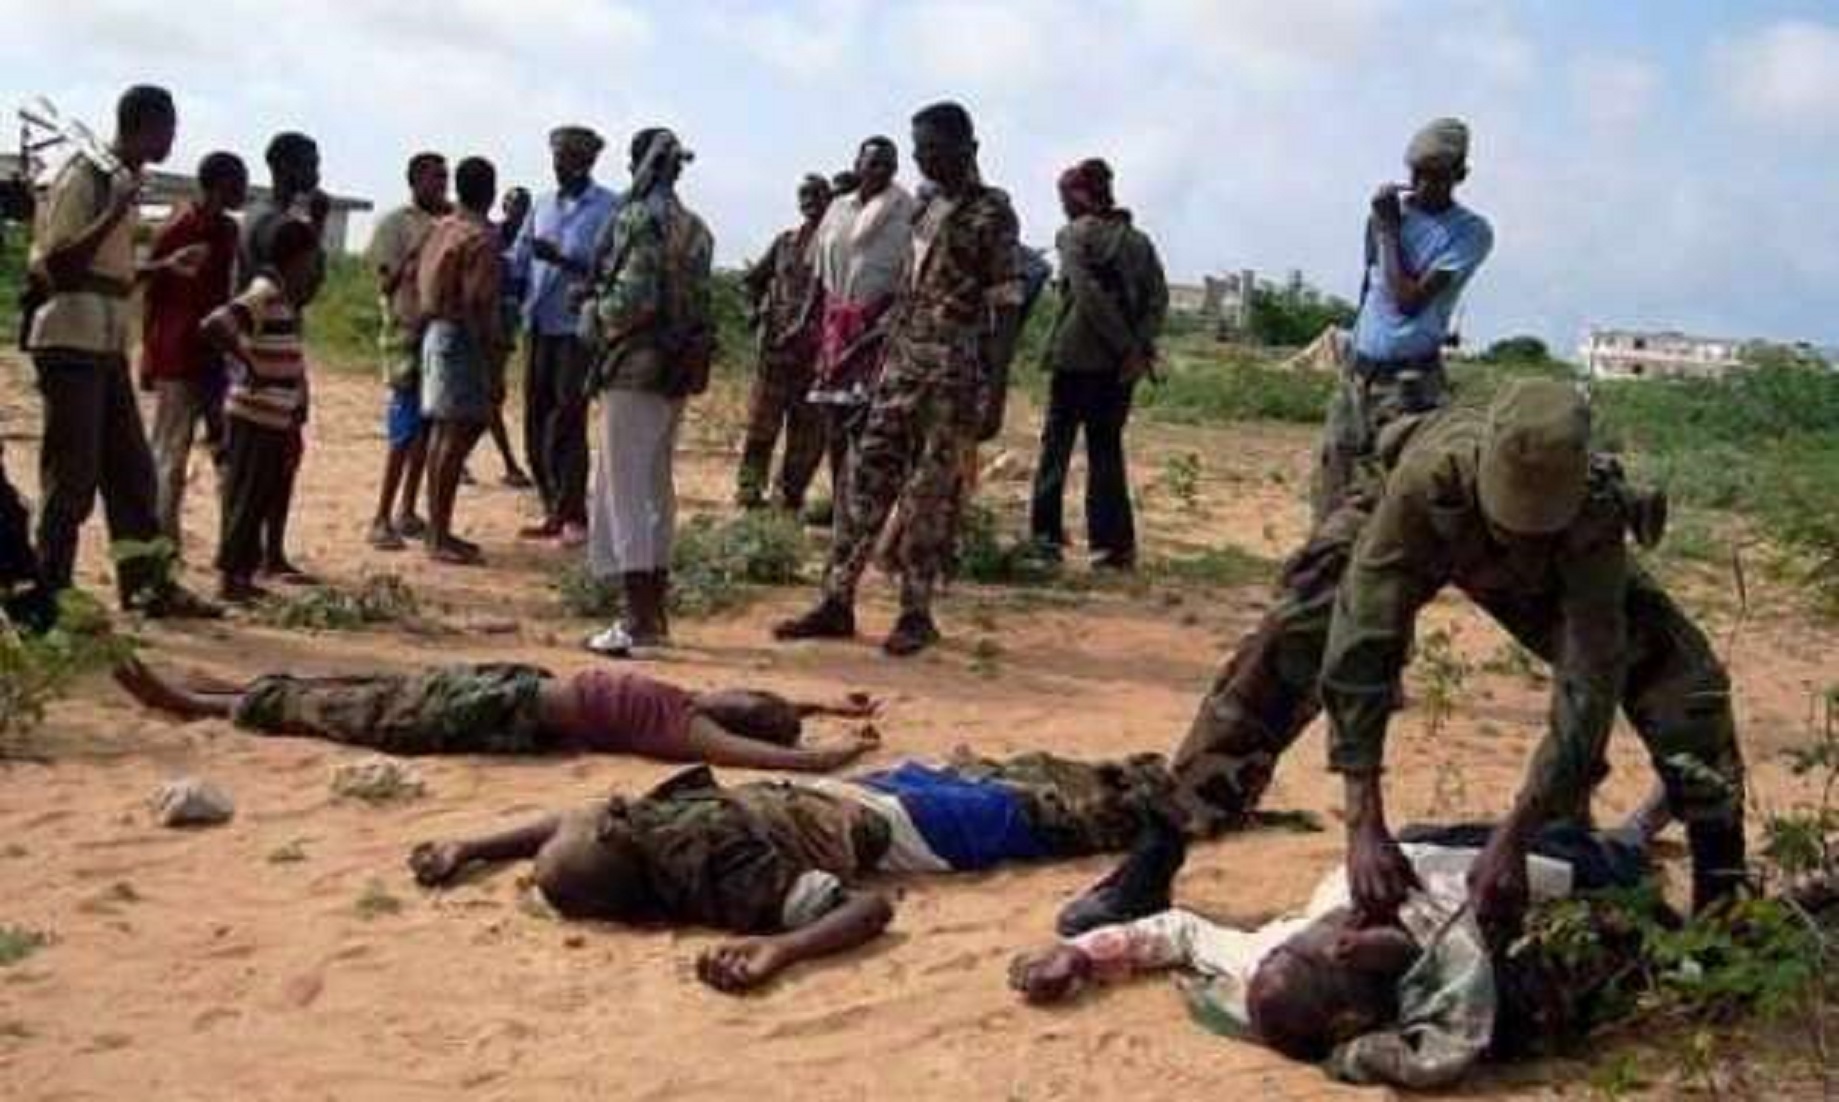 12 Al-Shabab Militants Killed In Central Somali Region